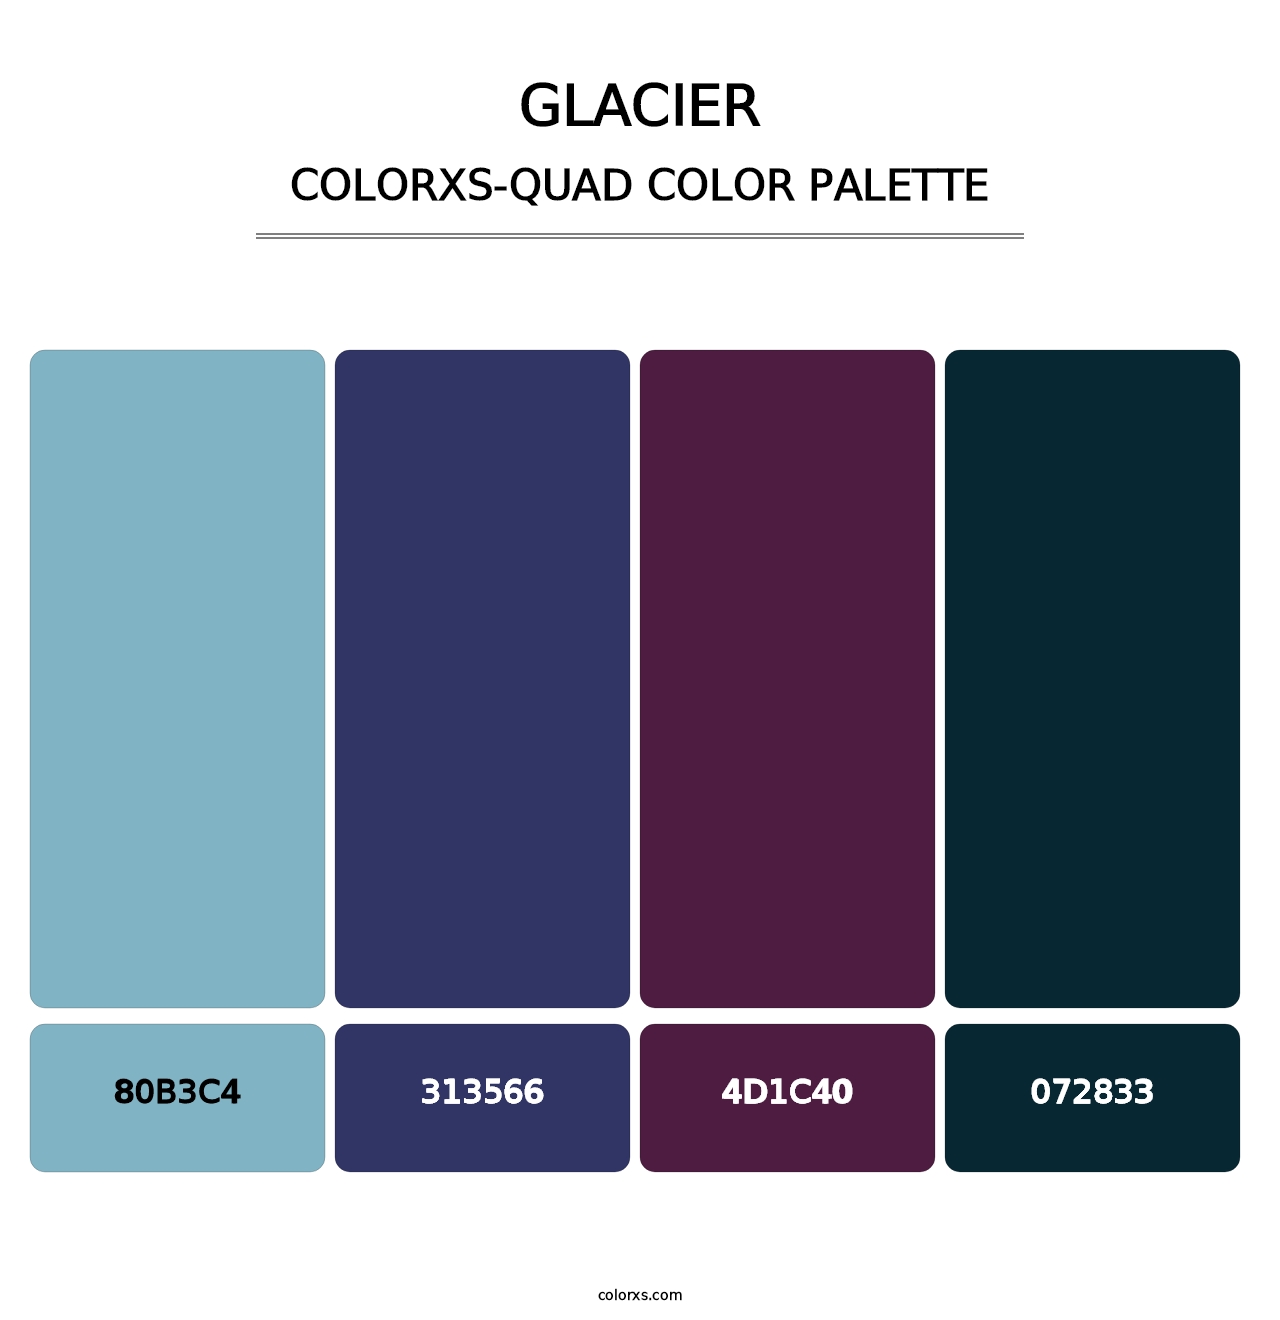 Glacier - Colorxs Quad Palette